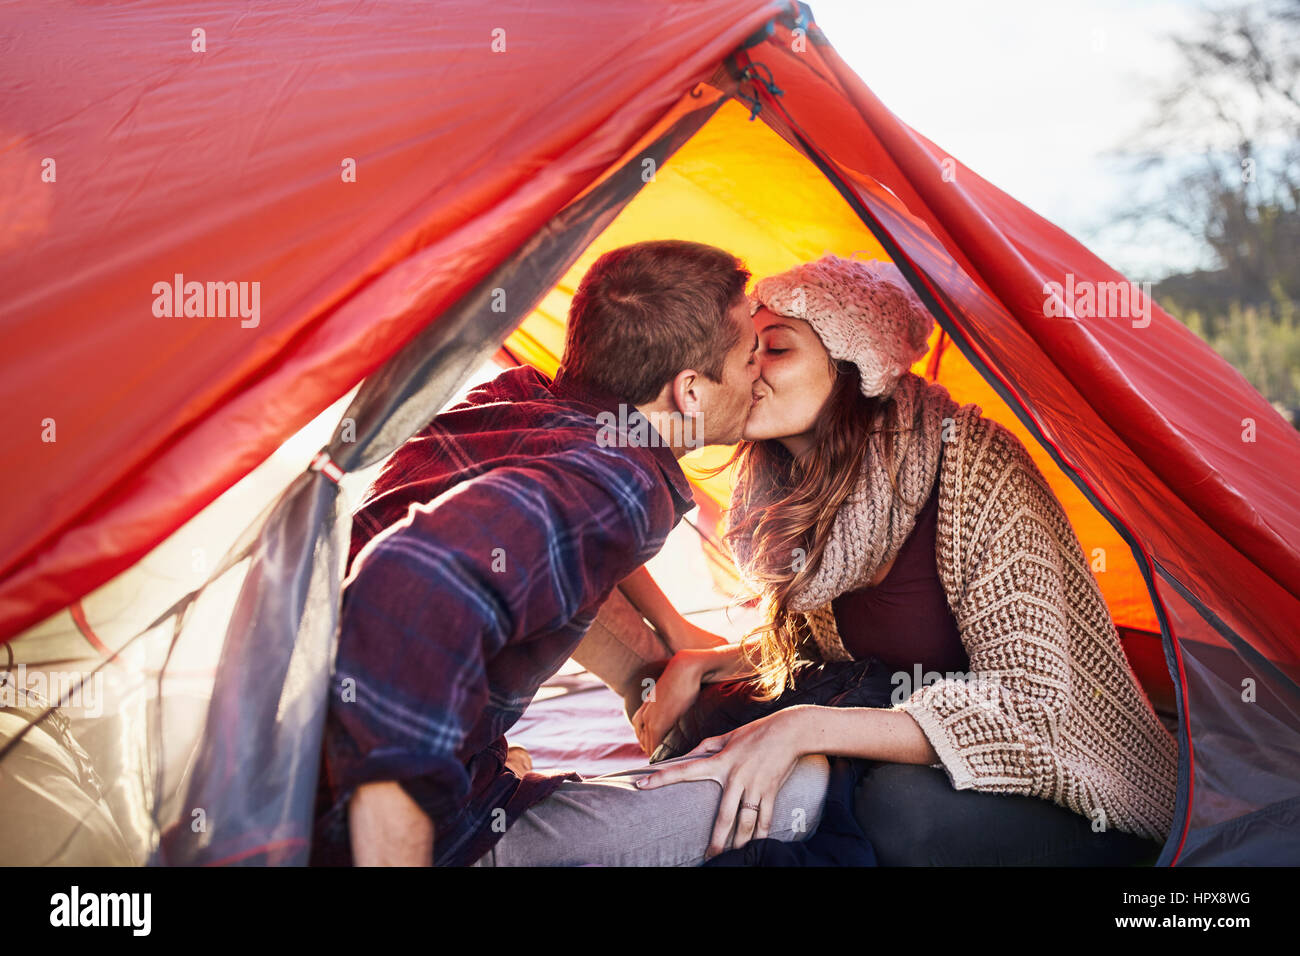 Jeune couple s'embrasser, à l'intérieur de tente de camping Banque D'Images